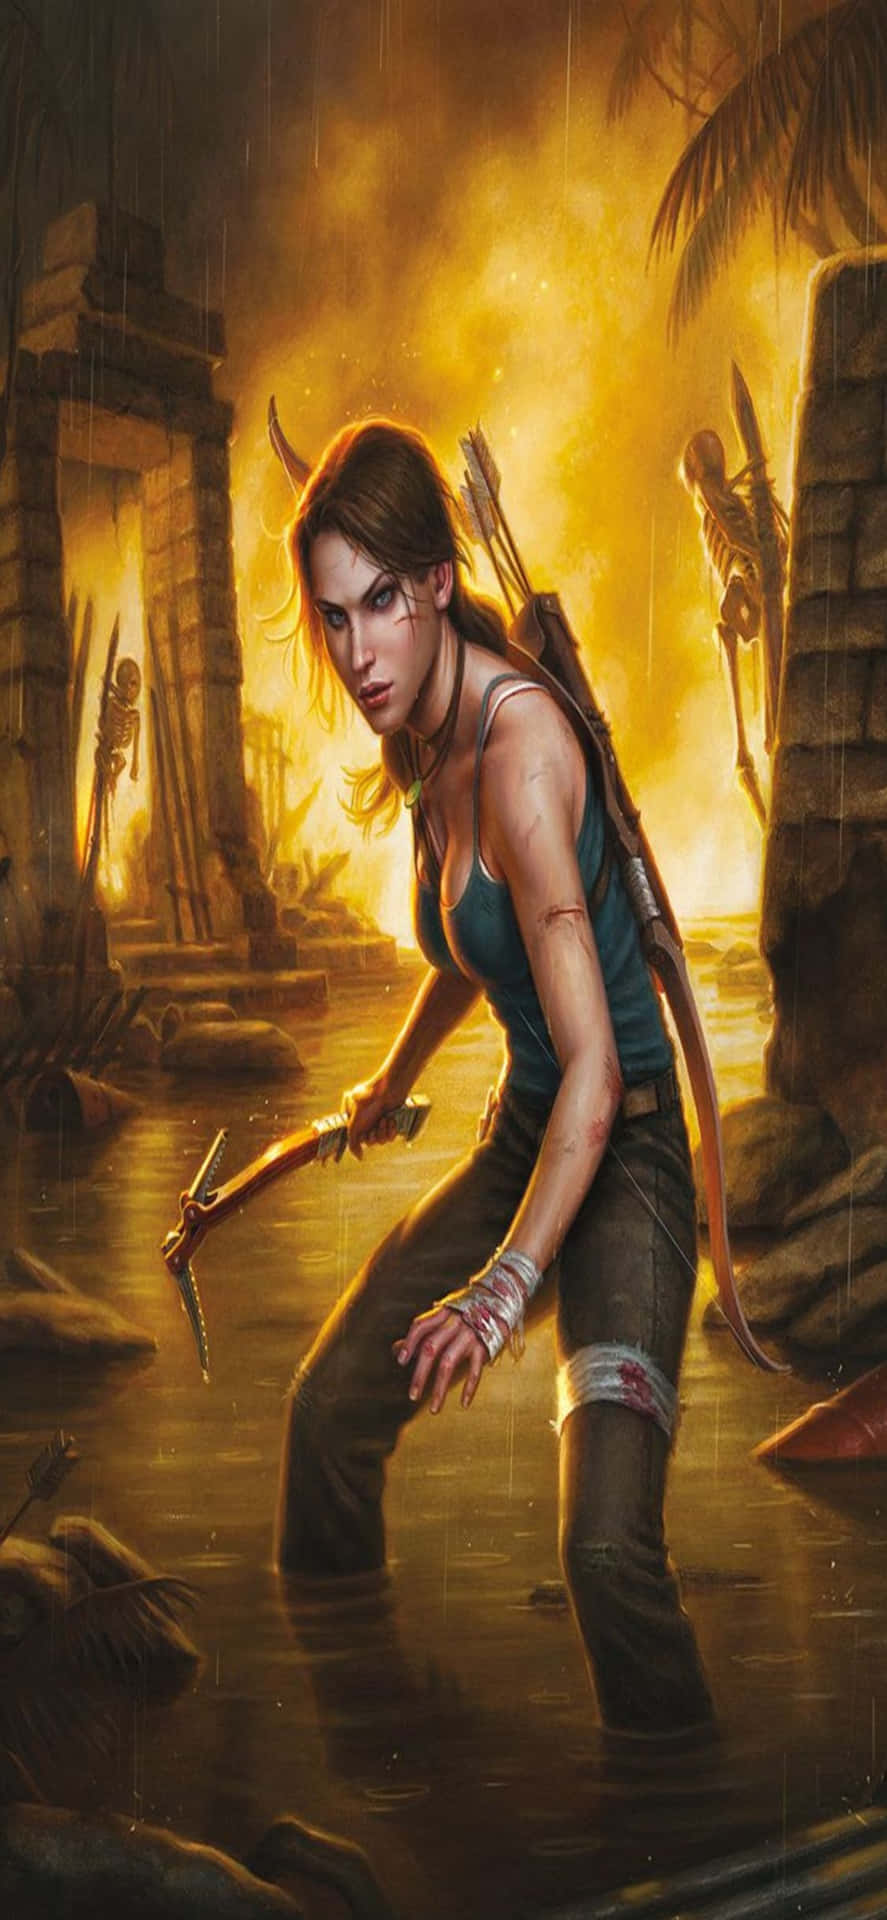 Entdeckedie Aufregende Welt Von Rise Of The Tomb Raider Auf Dem Iphone X.